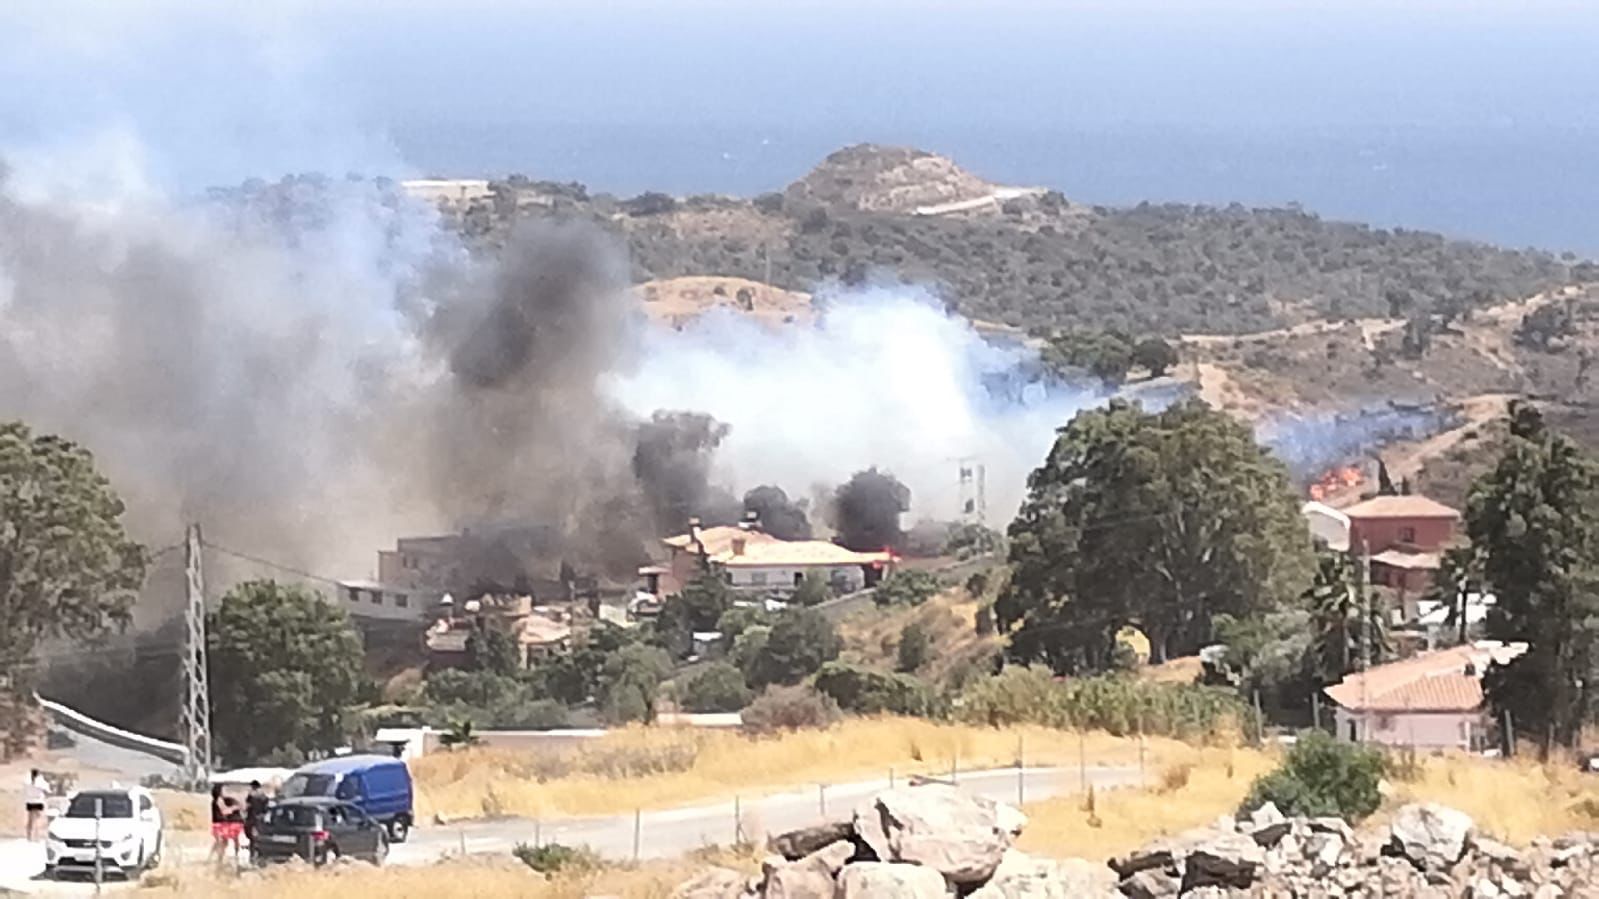 Incendio en Mijas, en la zona de Majadilla del Muerto, entre La Cala y Entrerríos